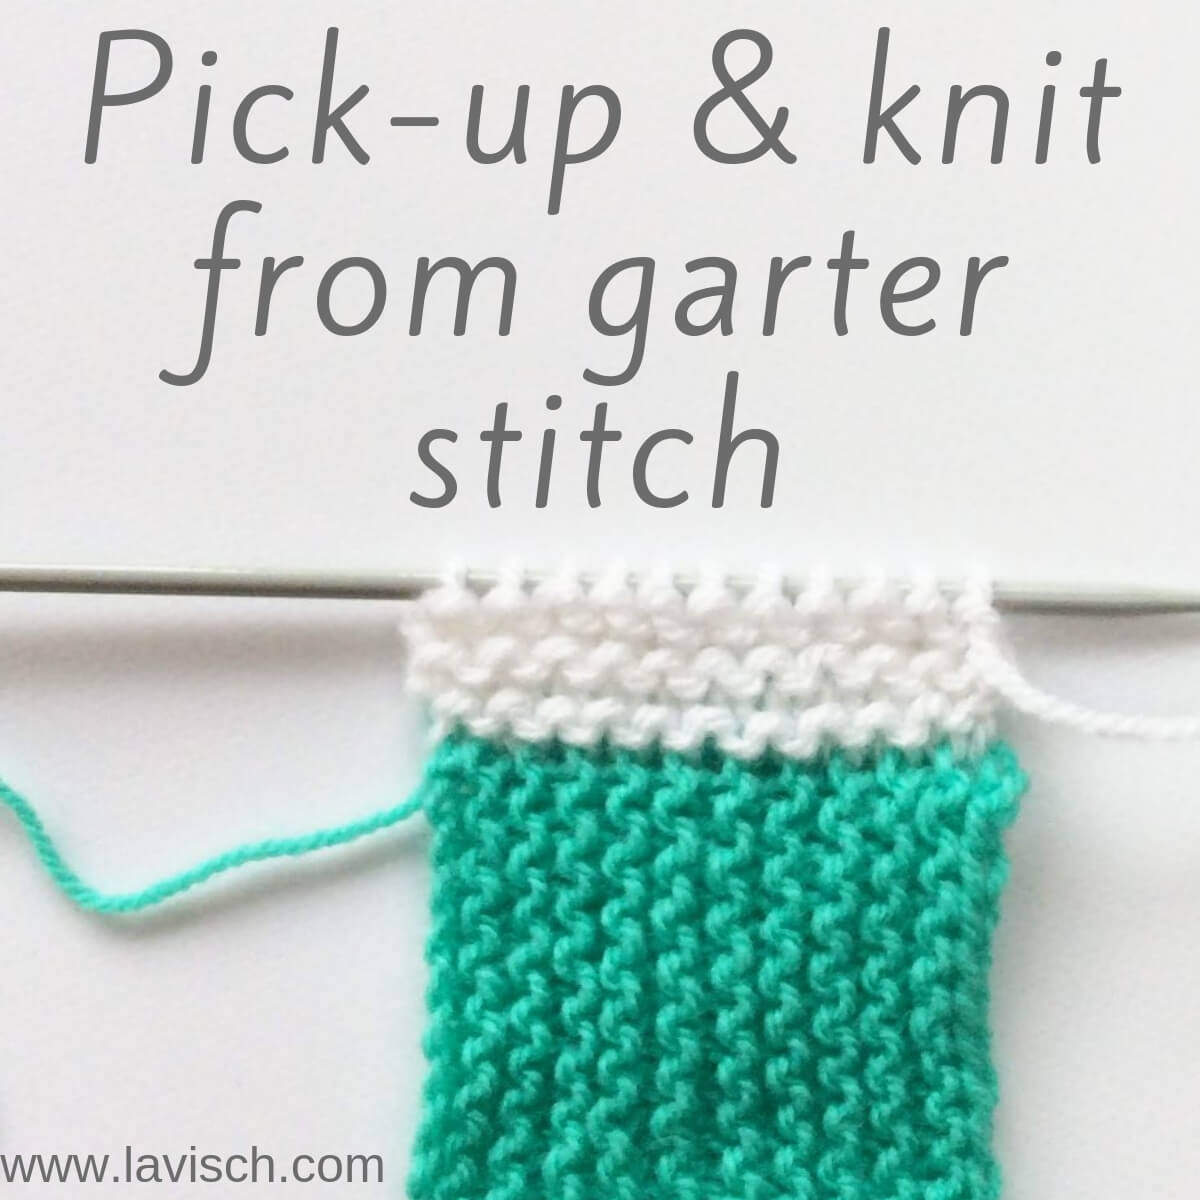 How to Knit the Garter Stitch - Knit Stitch Tutorial